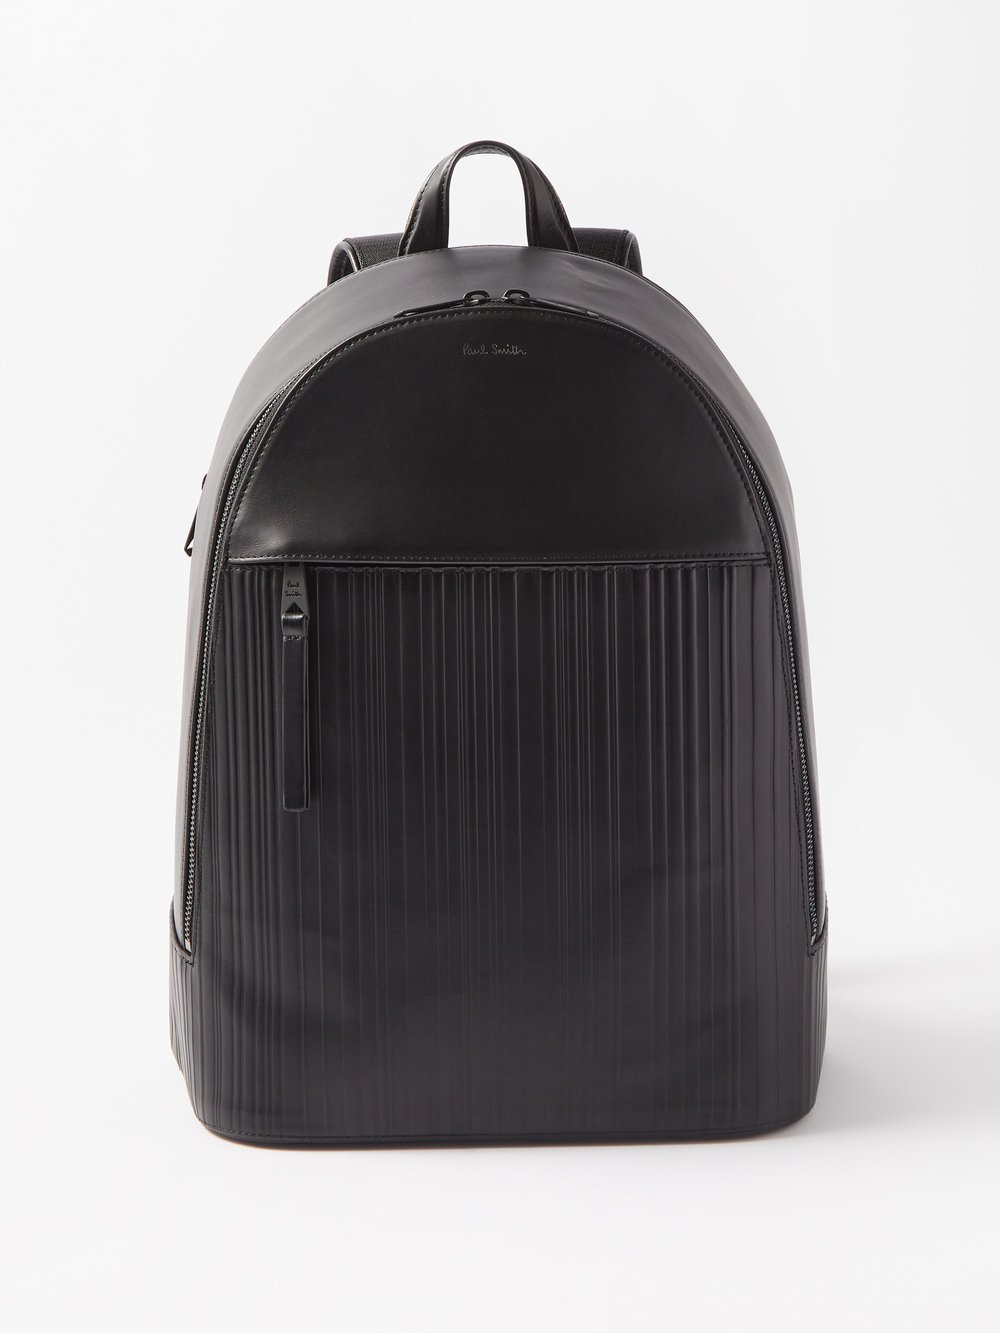 Кожаный рюкзак с тиснением signature stripe Paul Smith, черный набор из пяти разноцветных боксеров с полосками artist stripe paul smith цвет blacks